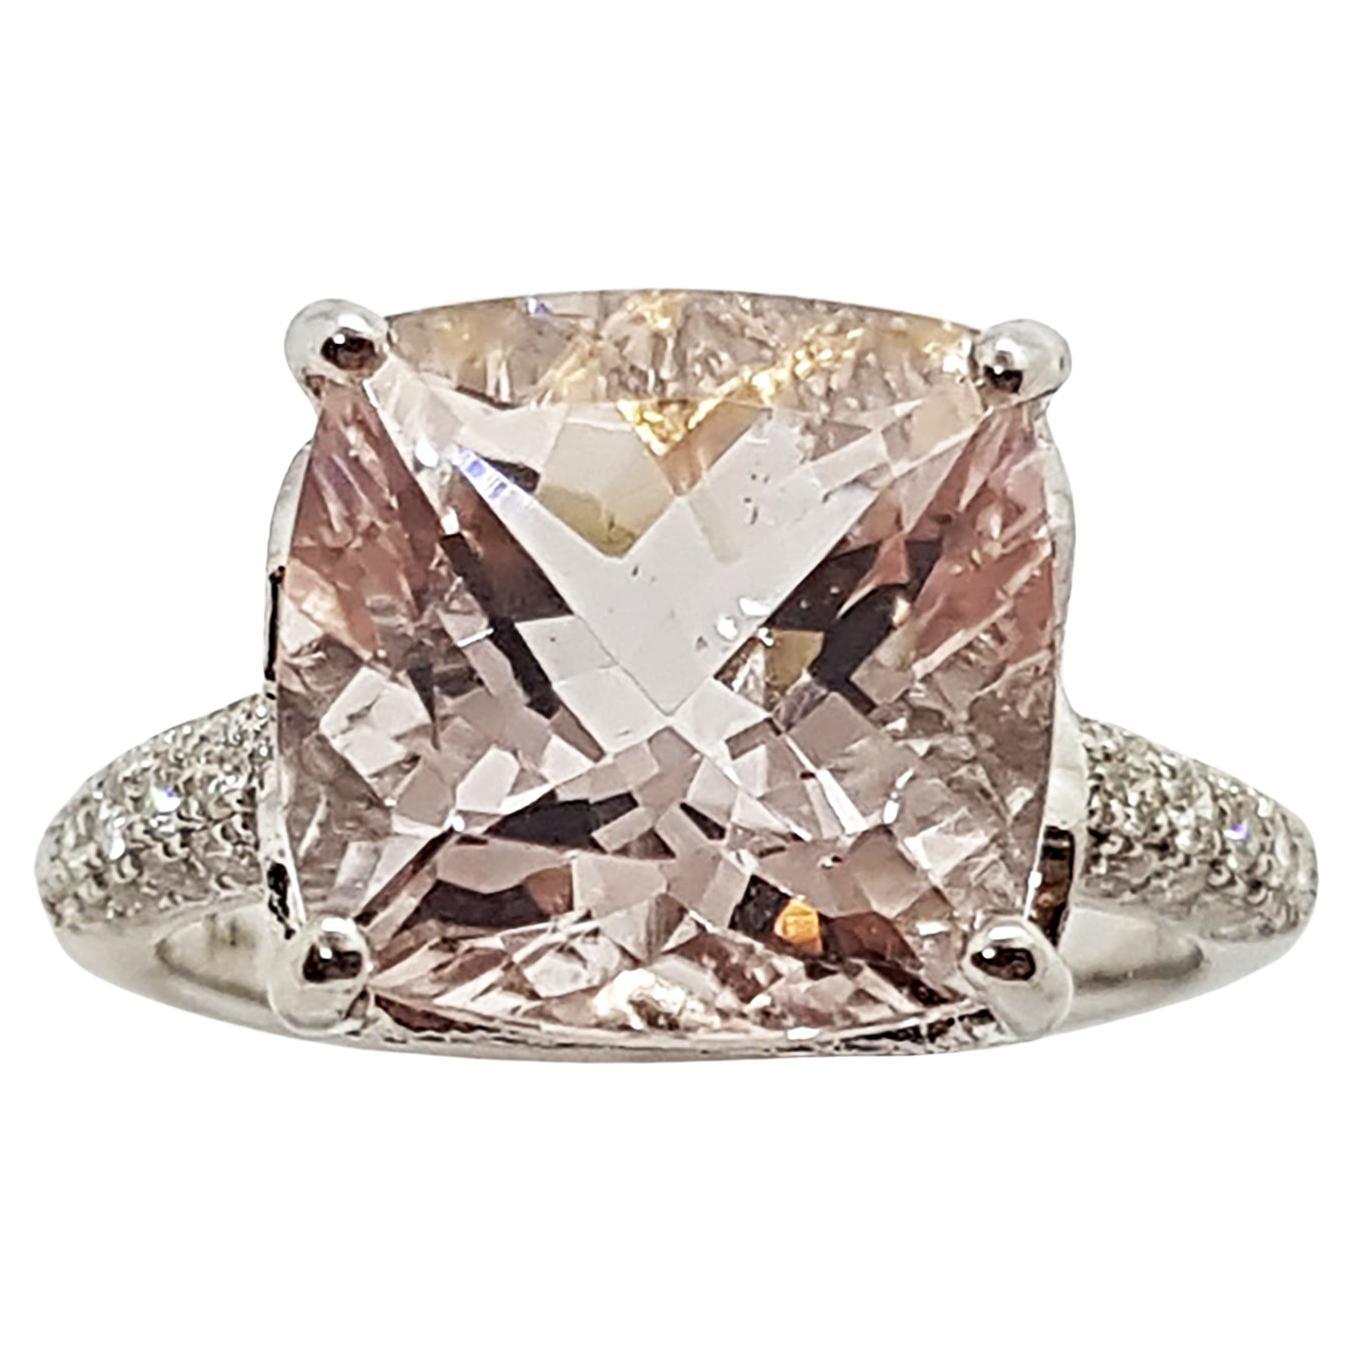 Morganite with Diamond Ring Set in 18 Karat White Gold Settings